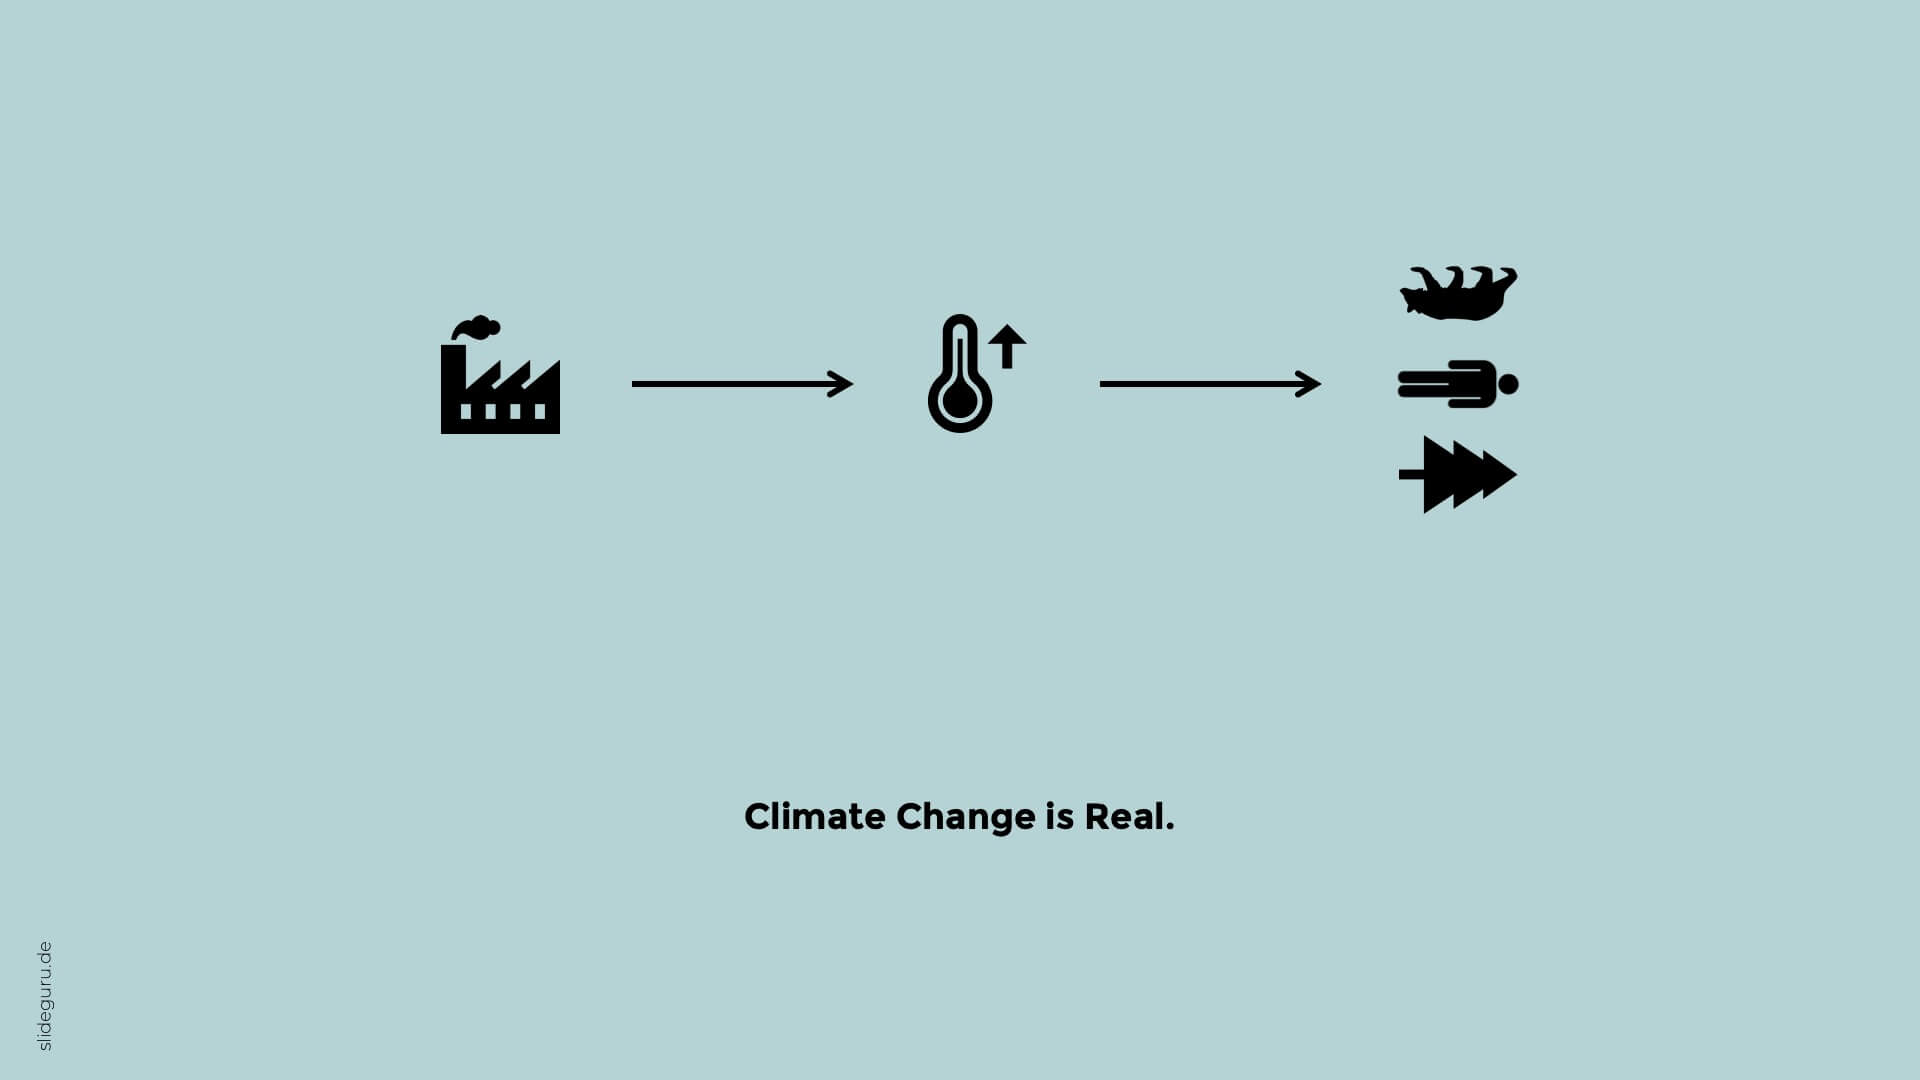 Klimawandel ist Realität. slideguru veranschaulicht auf effektvolle Weise die Auswirkung des Klimawandels